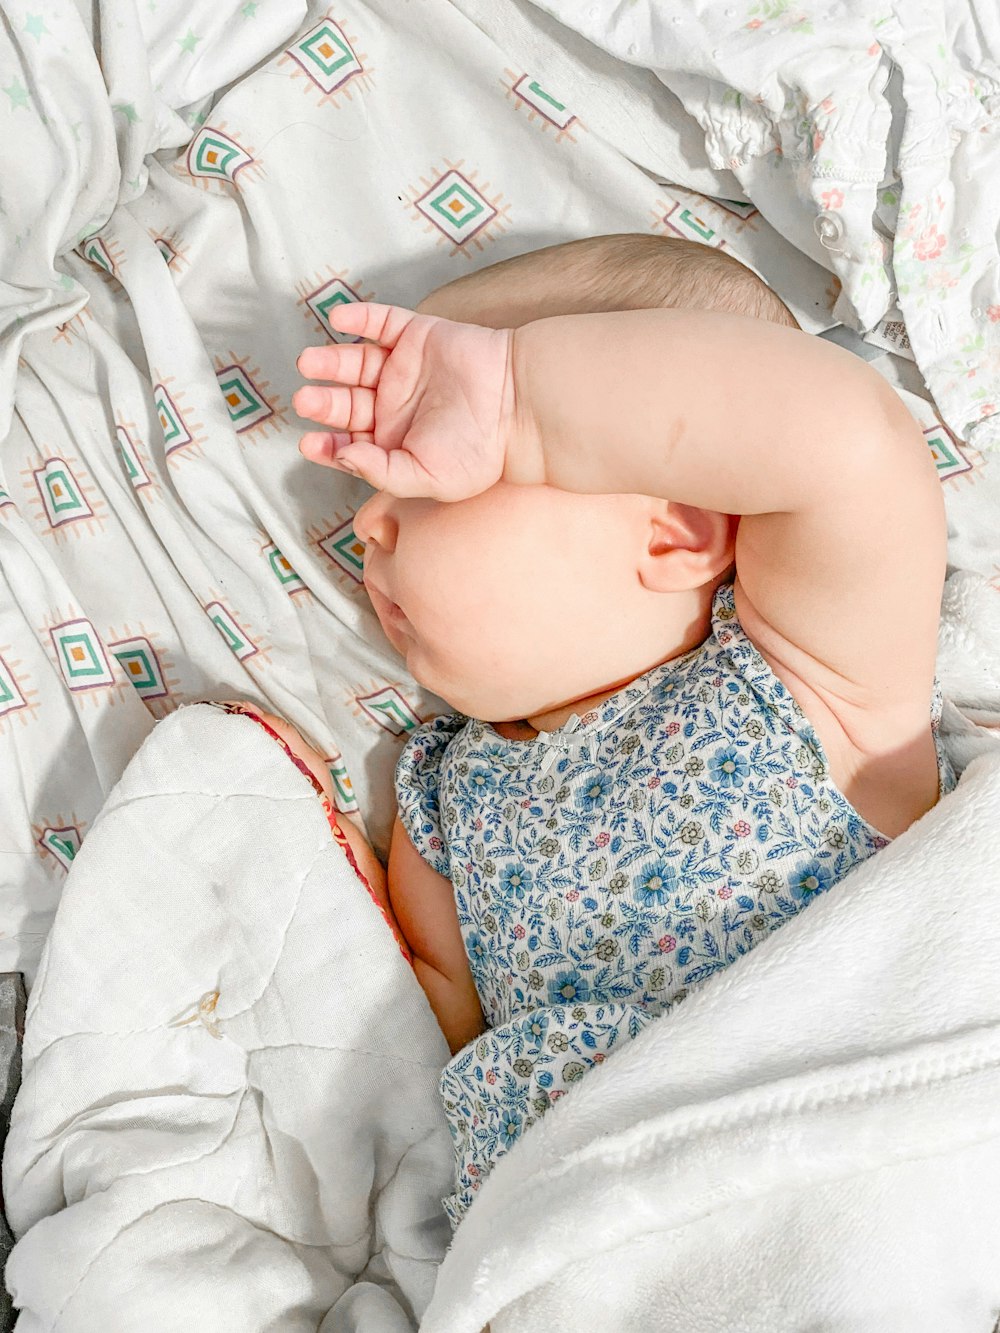 Un bebé acostado en una cama con una manta blanca